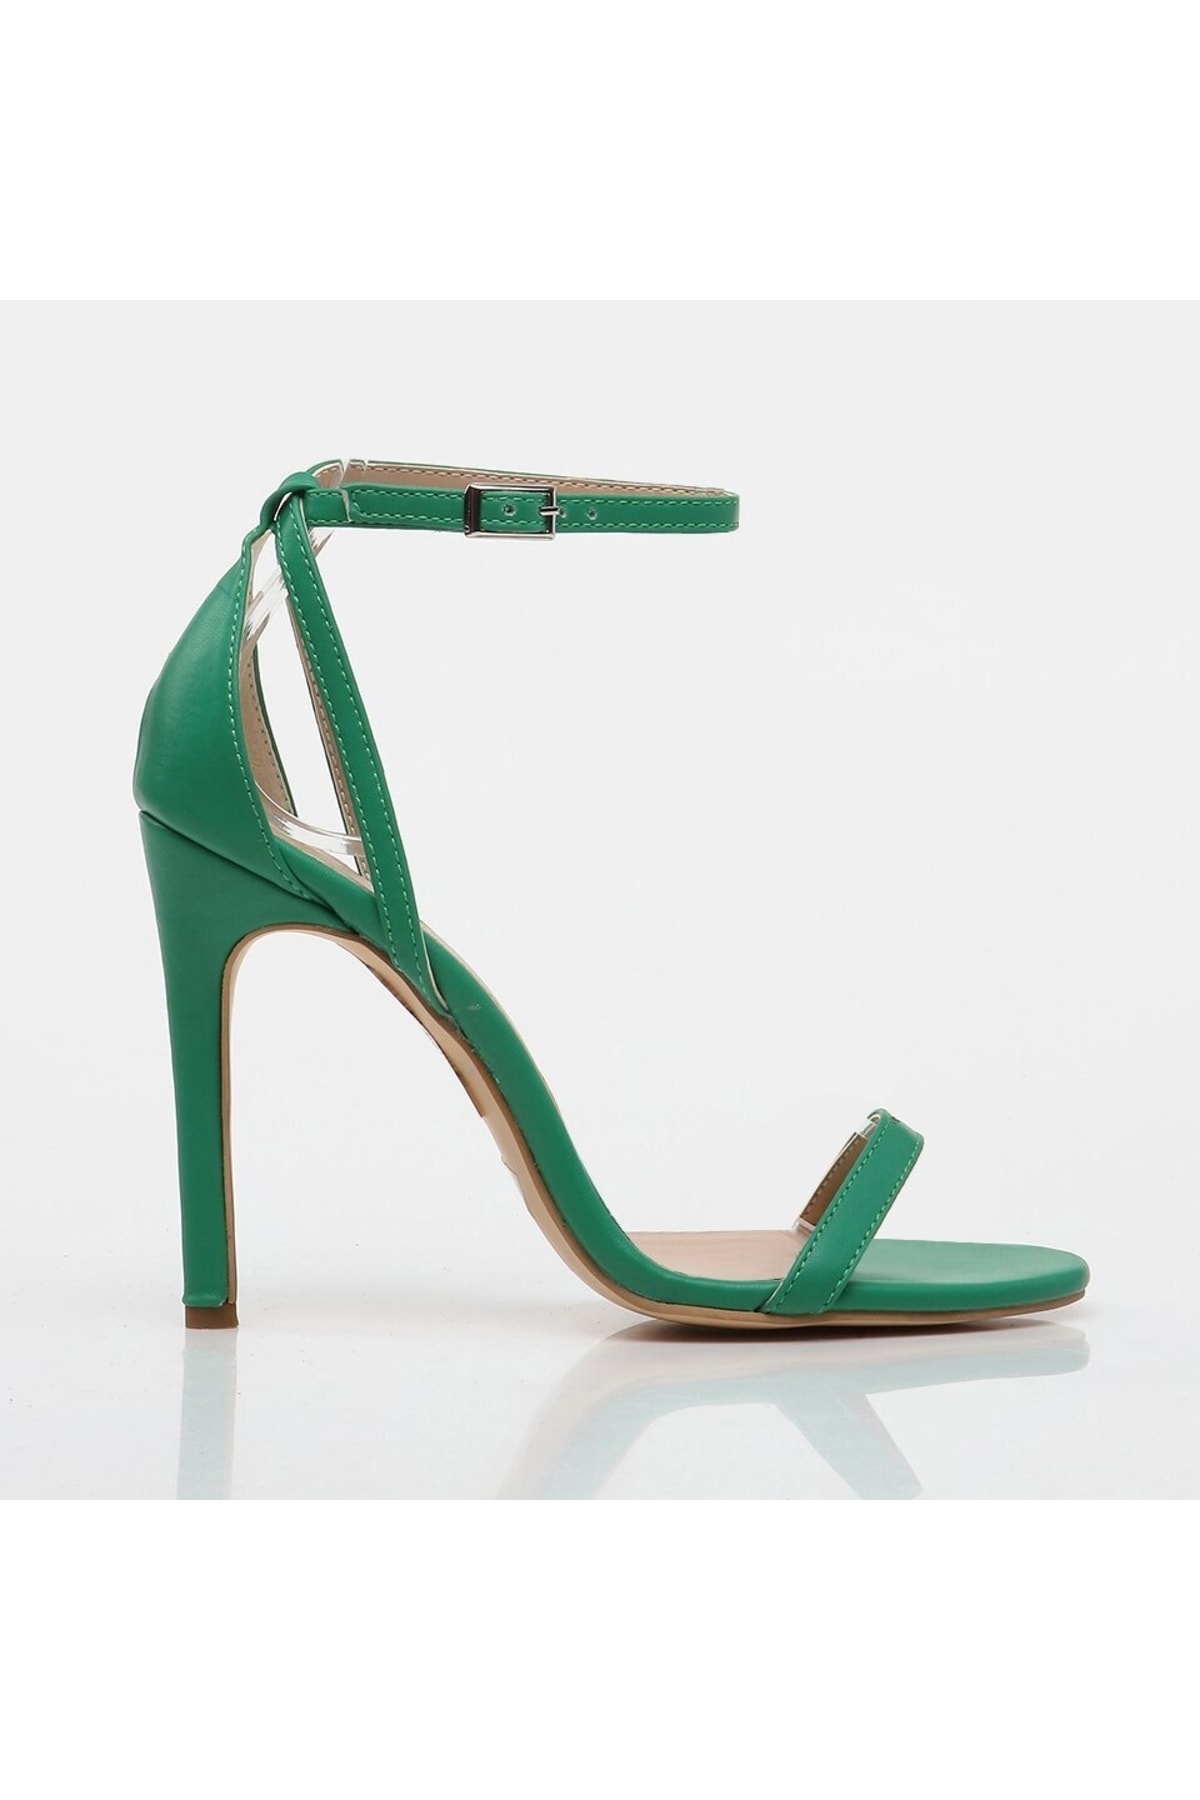 Levně Hotiç Women's Green Heeled Sandals